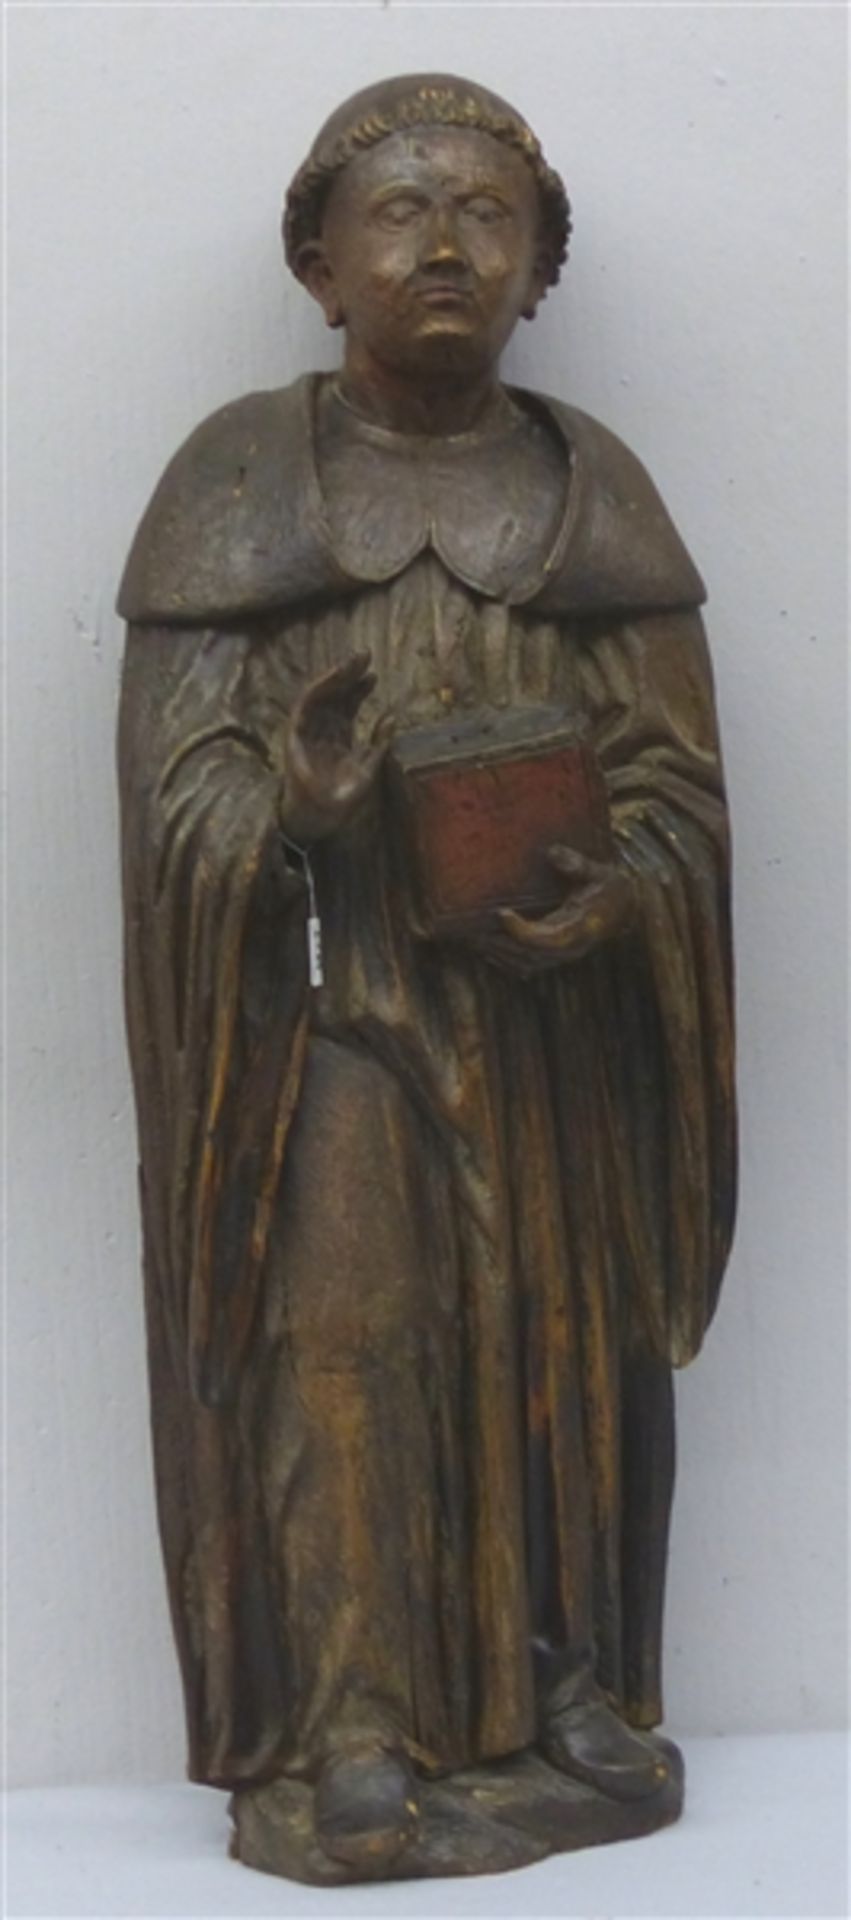 Skulptur Mönch mit Gebetbuch, 16. Jh., gotisch, Hände ergänzt, Vorreformatorisch, gehöhlt, h 86